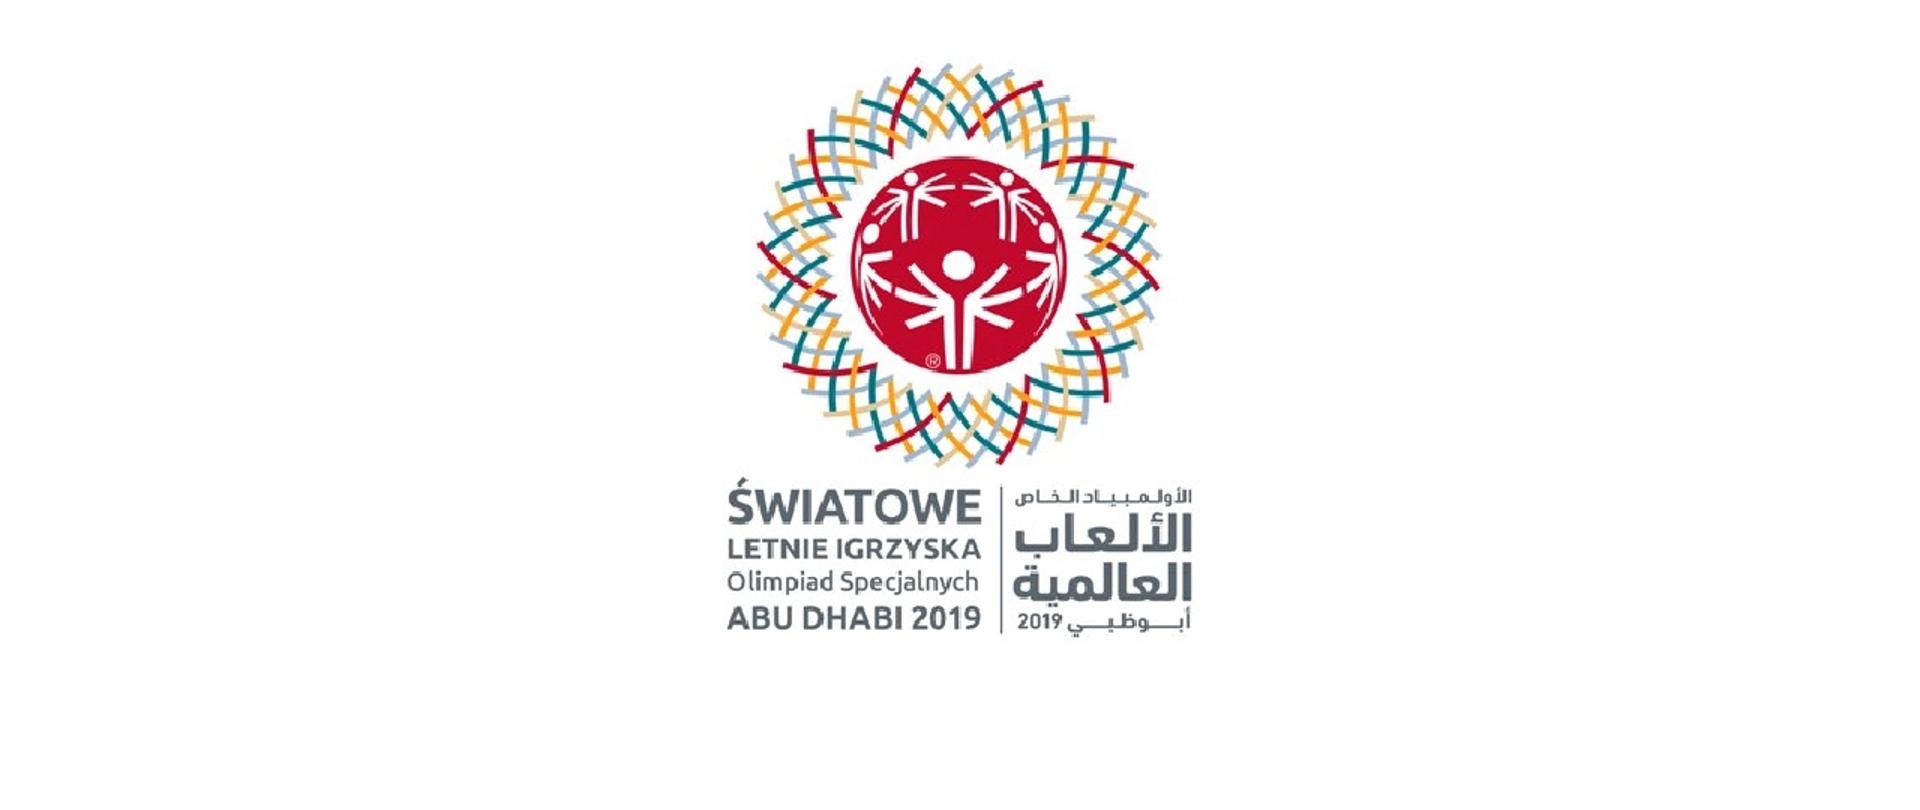 Światowe Letnie Igrzyska Olimpiad Specjalnych w Abu Dhabi 2019